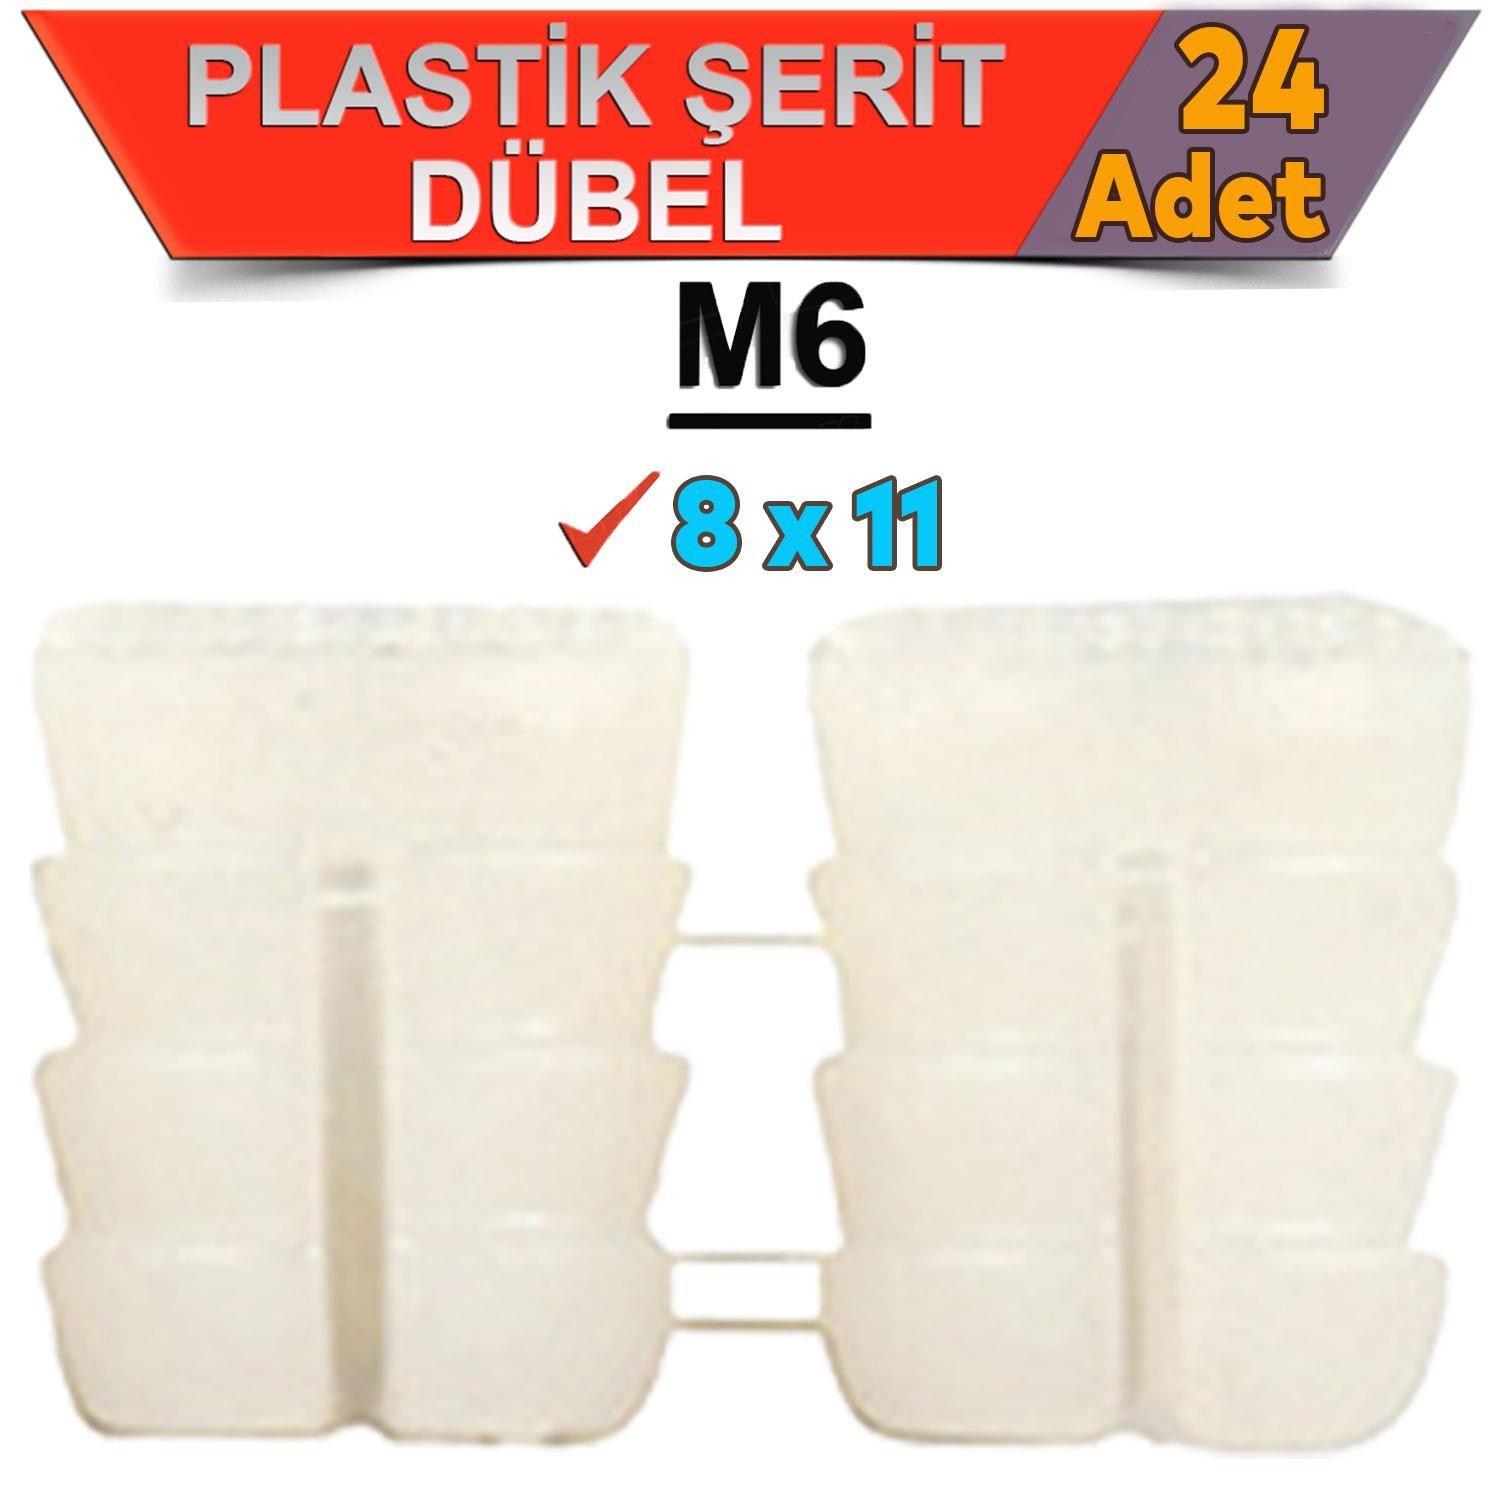 Şerit Dübel 8x11 Plastik M6 (24 ADET)